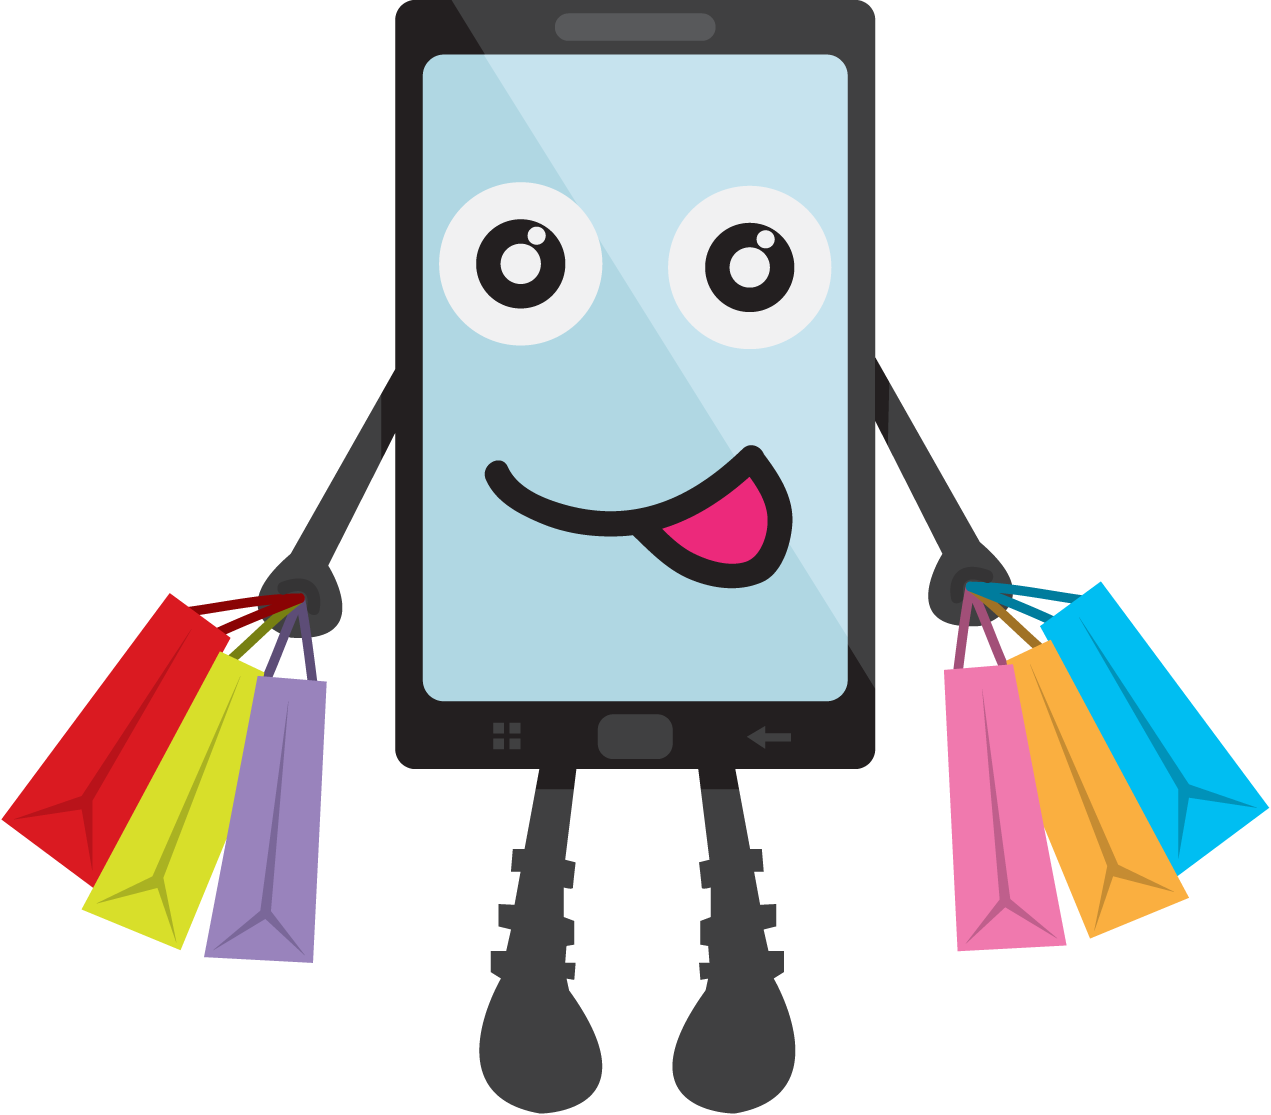 Online Shopping E-commerce Bag - Shopping (1271x1115)